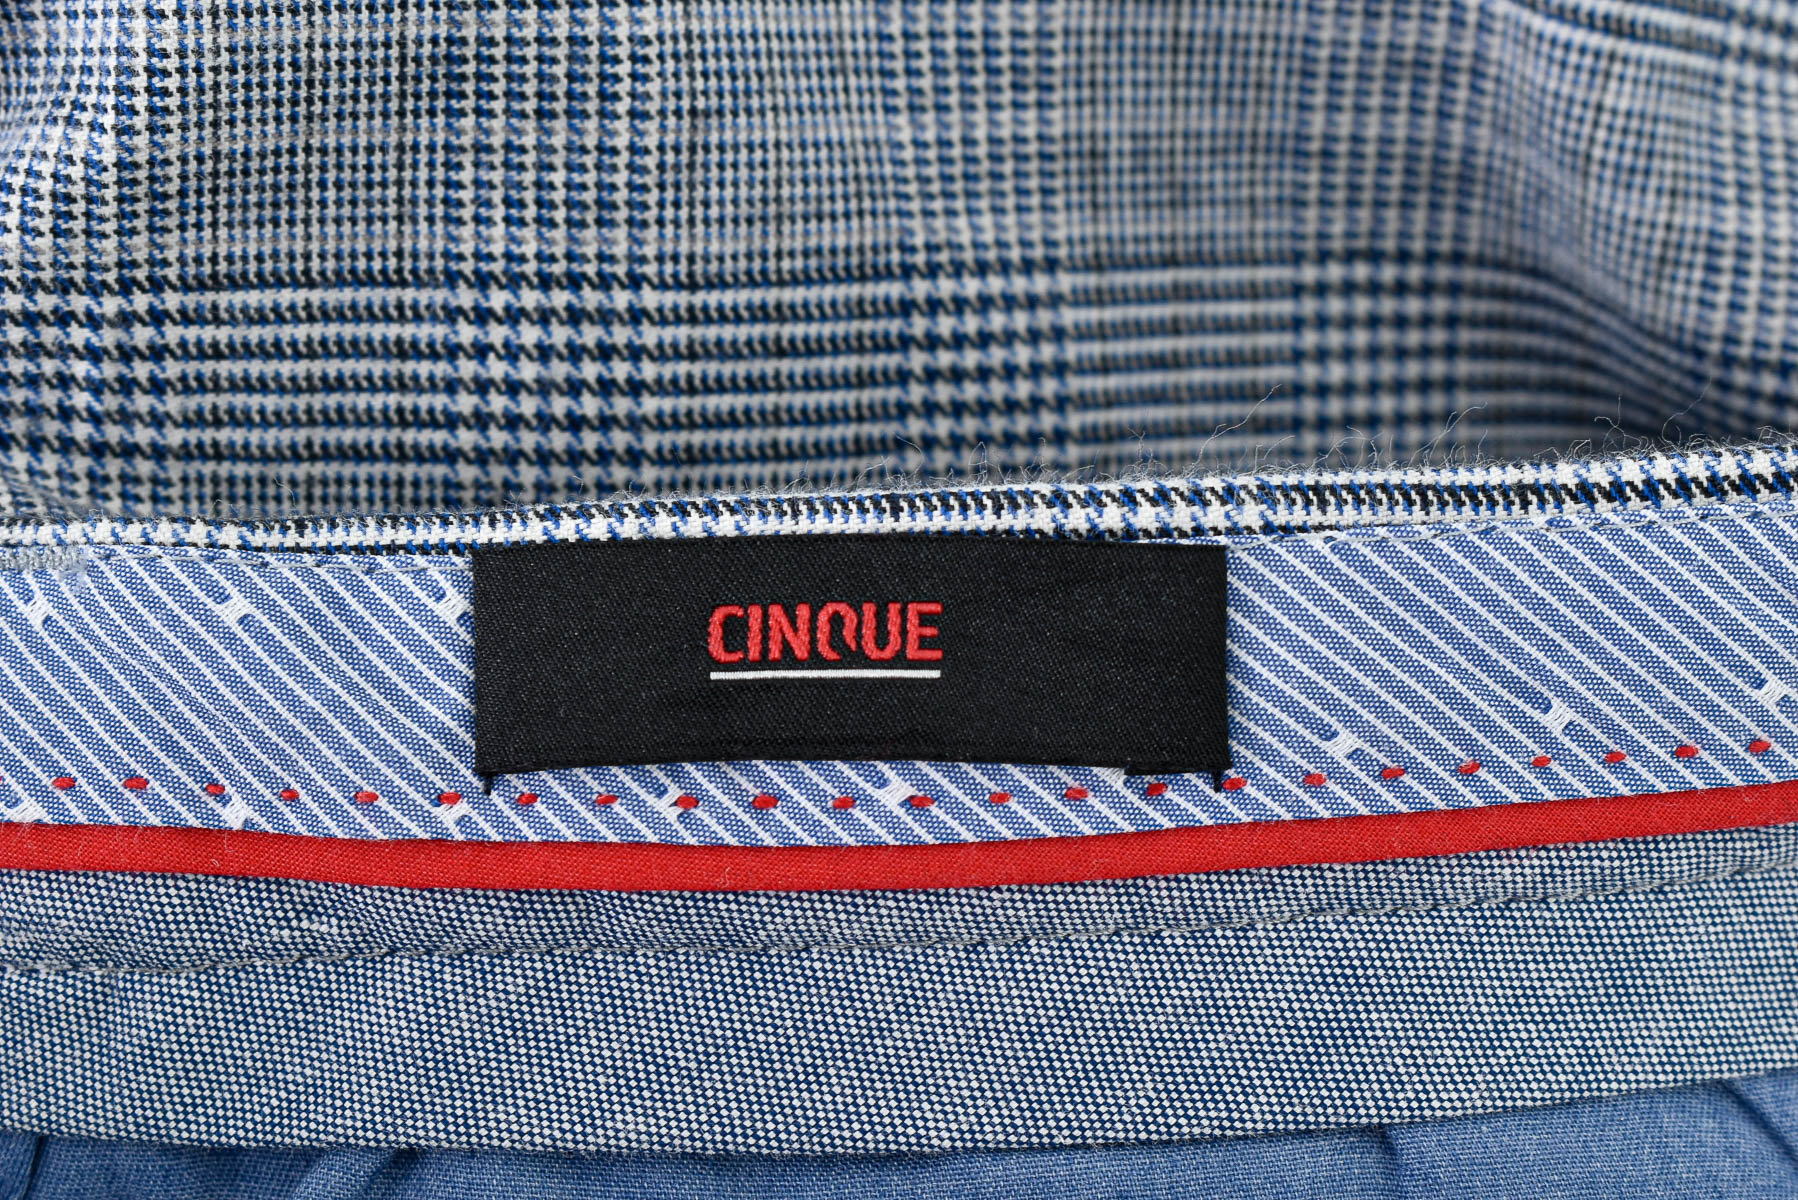 Pantalon pentru bărbați - CINQUE - 2